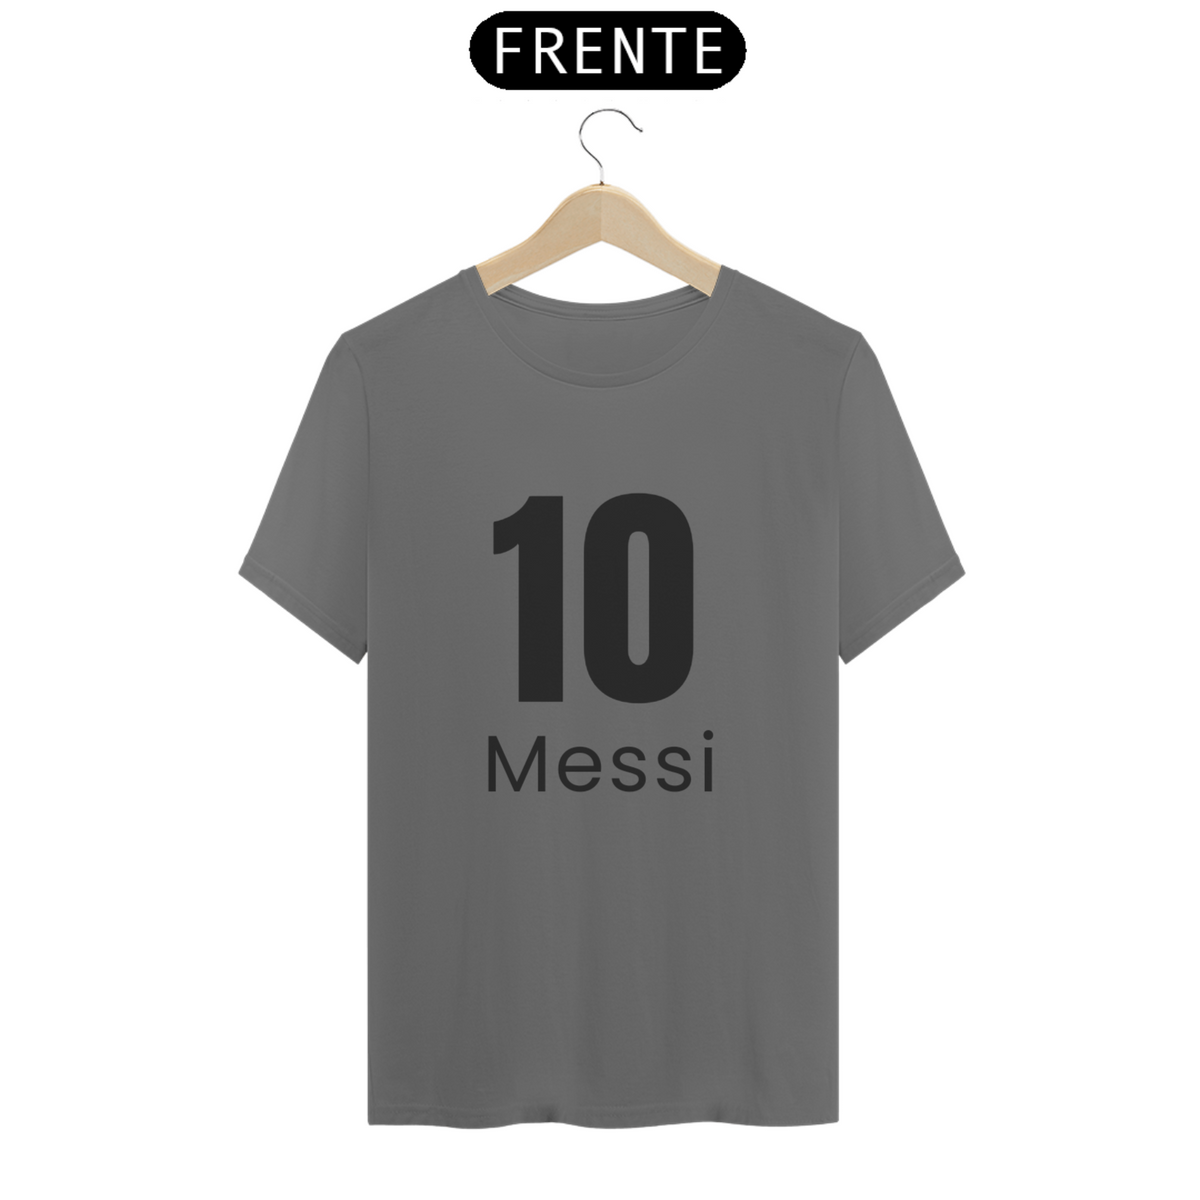 Nome do produto: Camisa 10 do messi